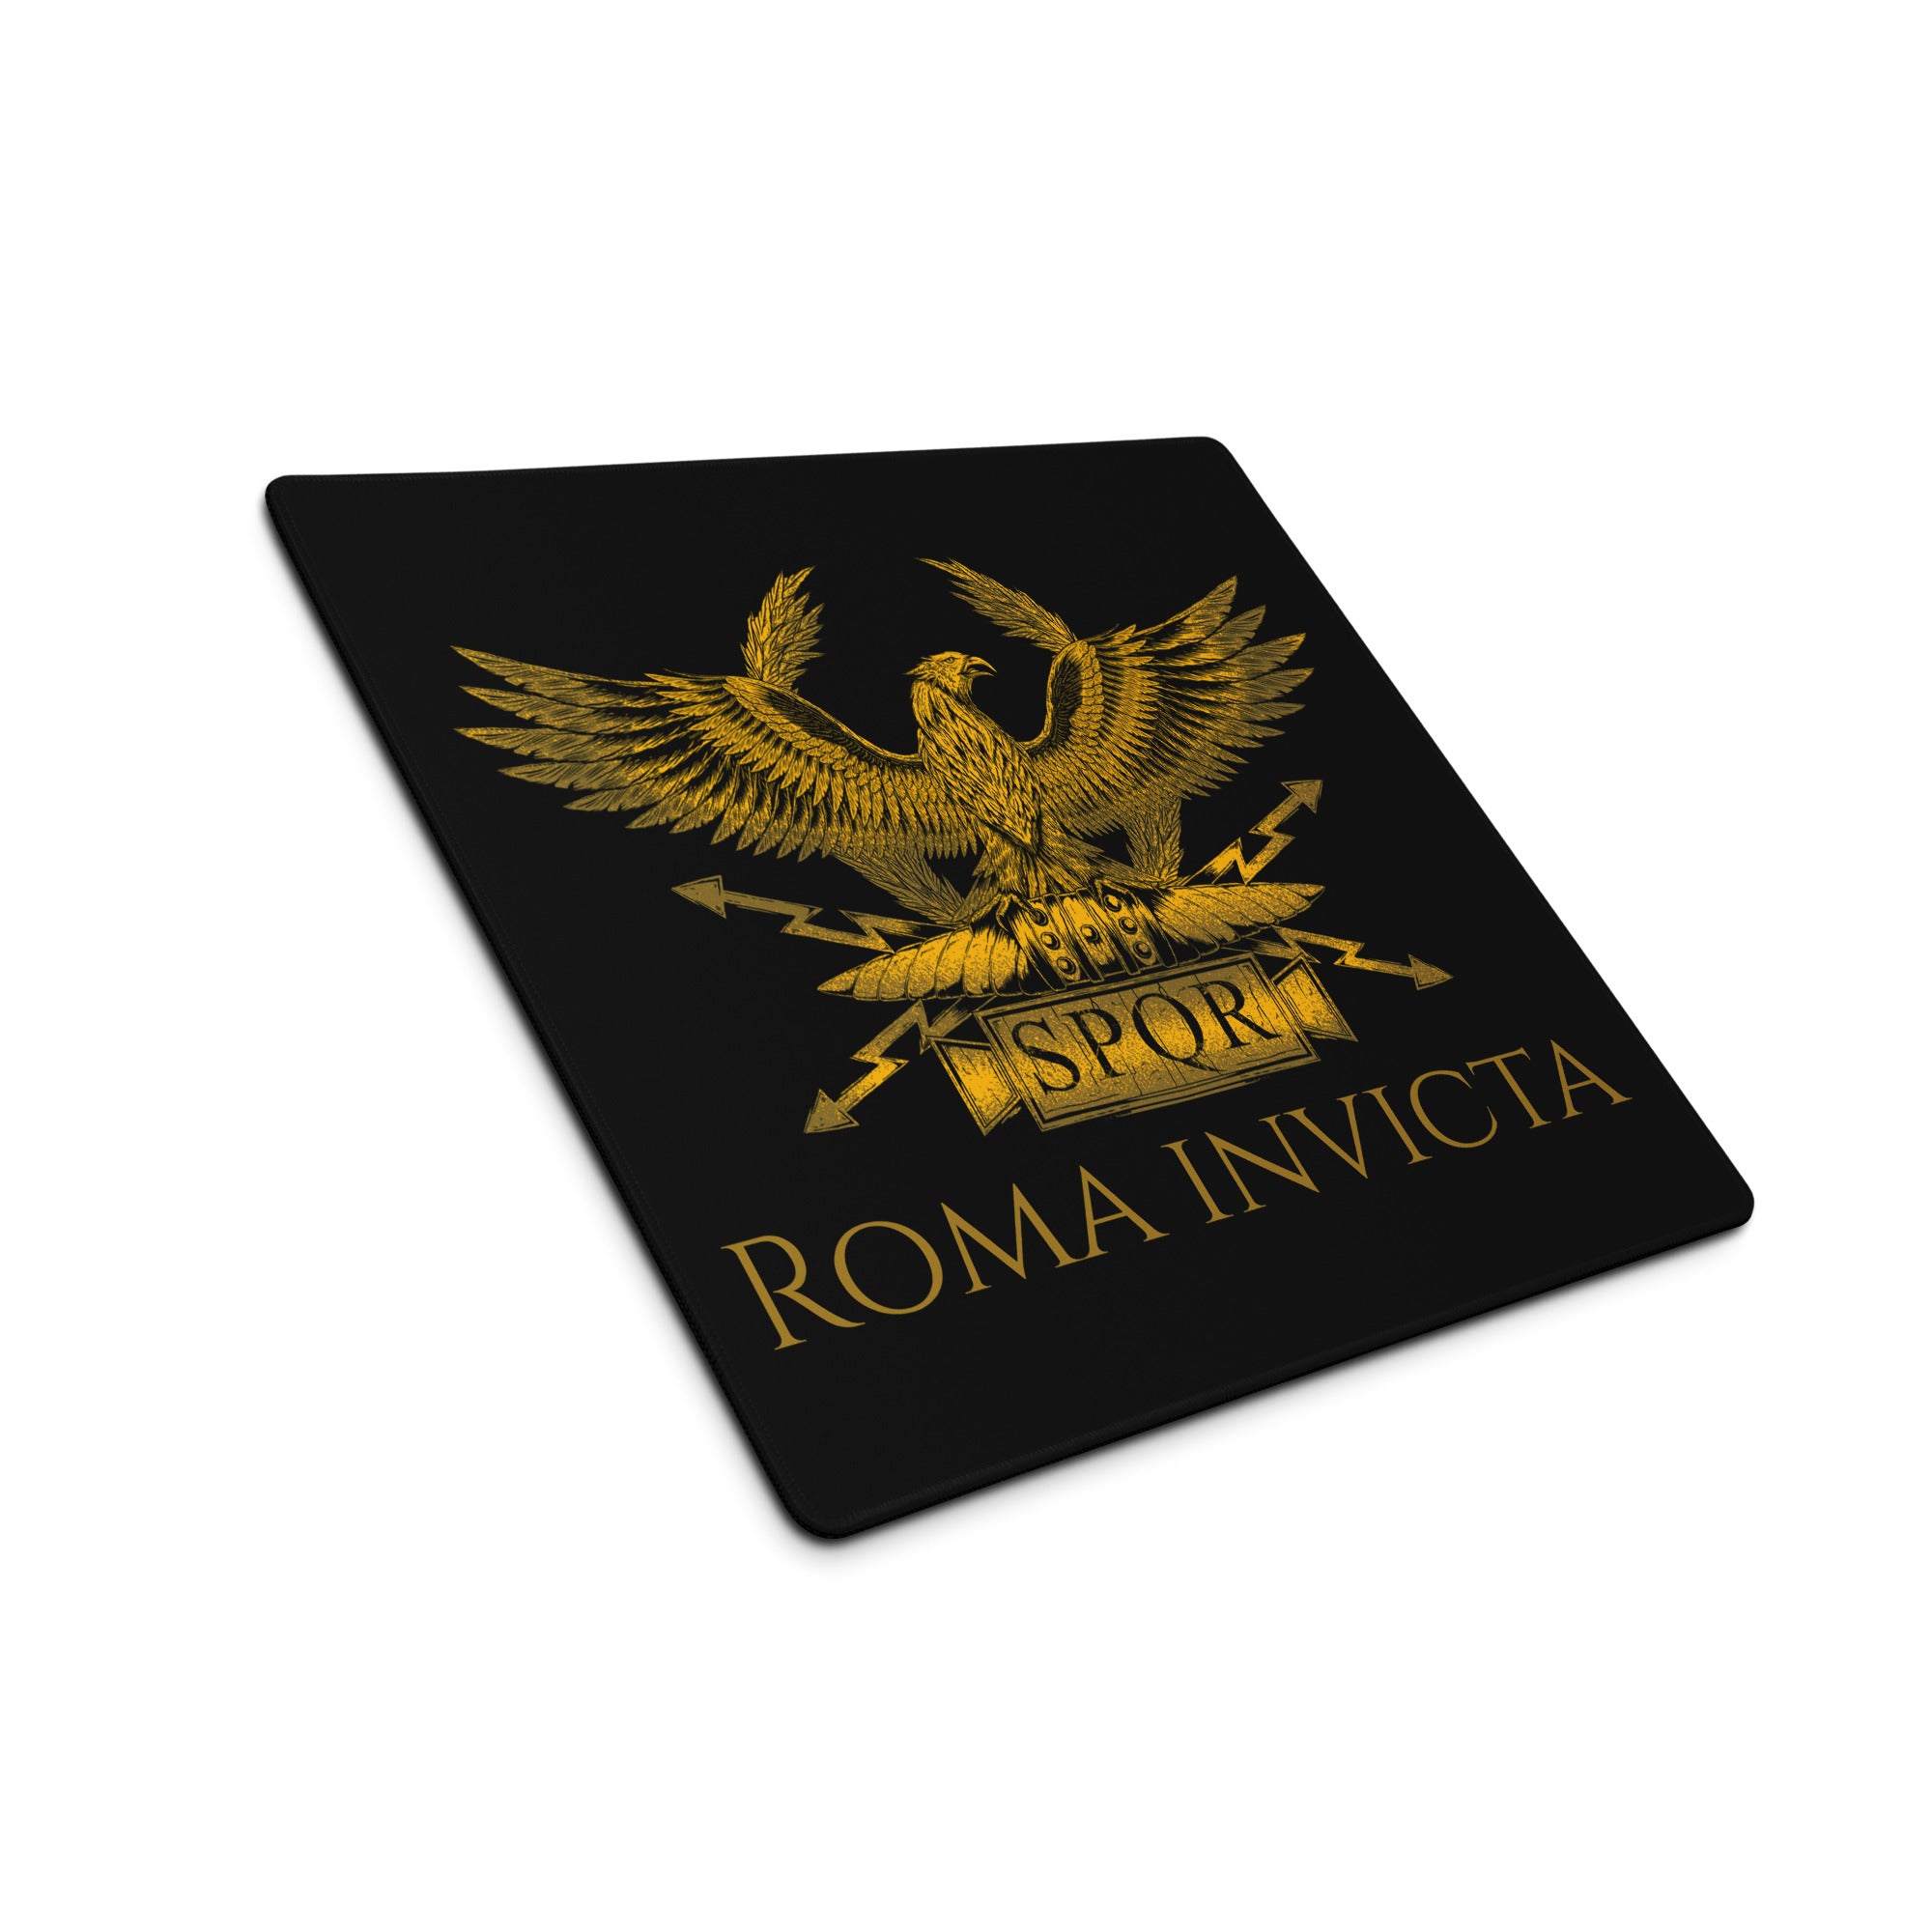 Roma Invicta - Legionary Eagle - Gaming Mouse Pad